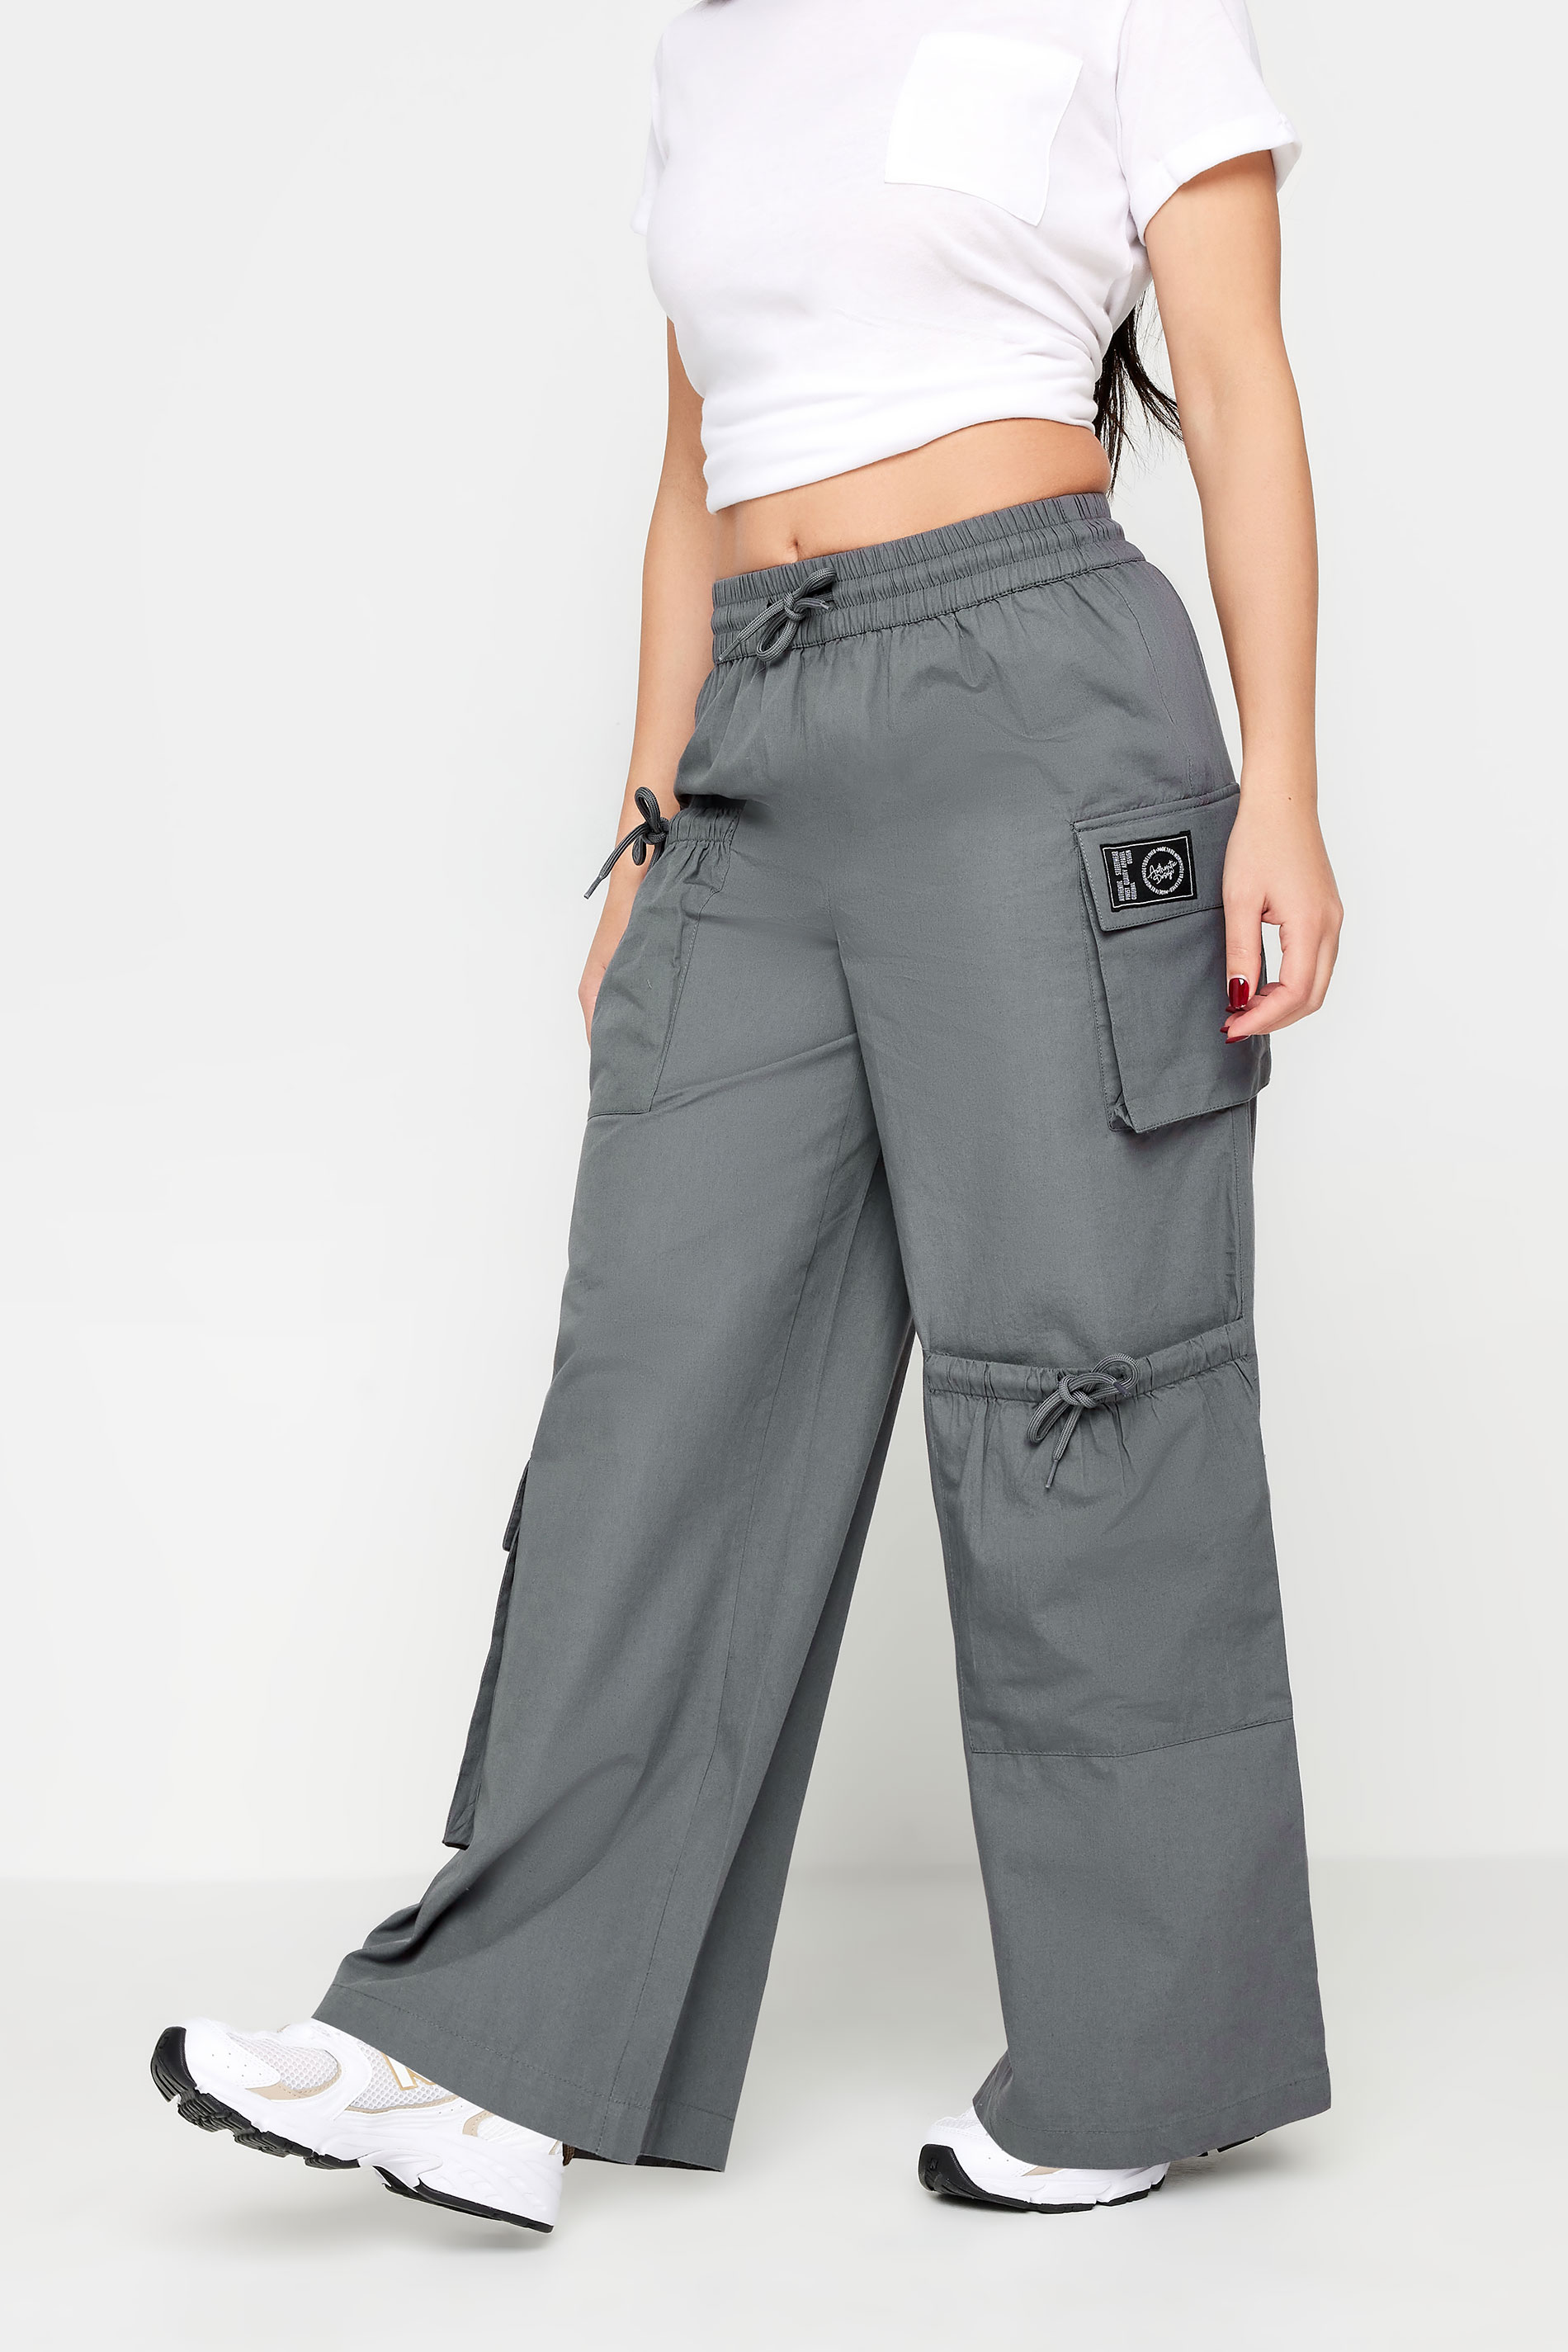 PixieGirl Grey Pocket Detail Cargo Trousers | PixieGirl  2